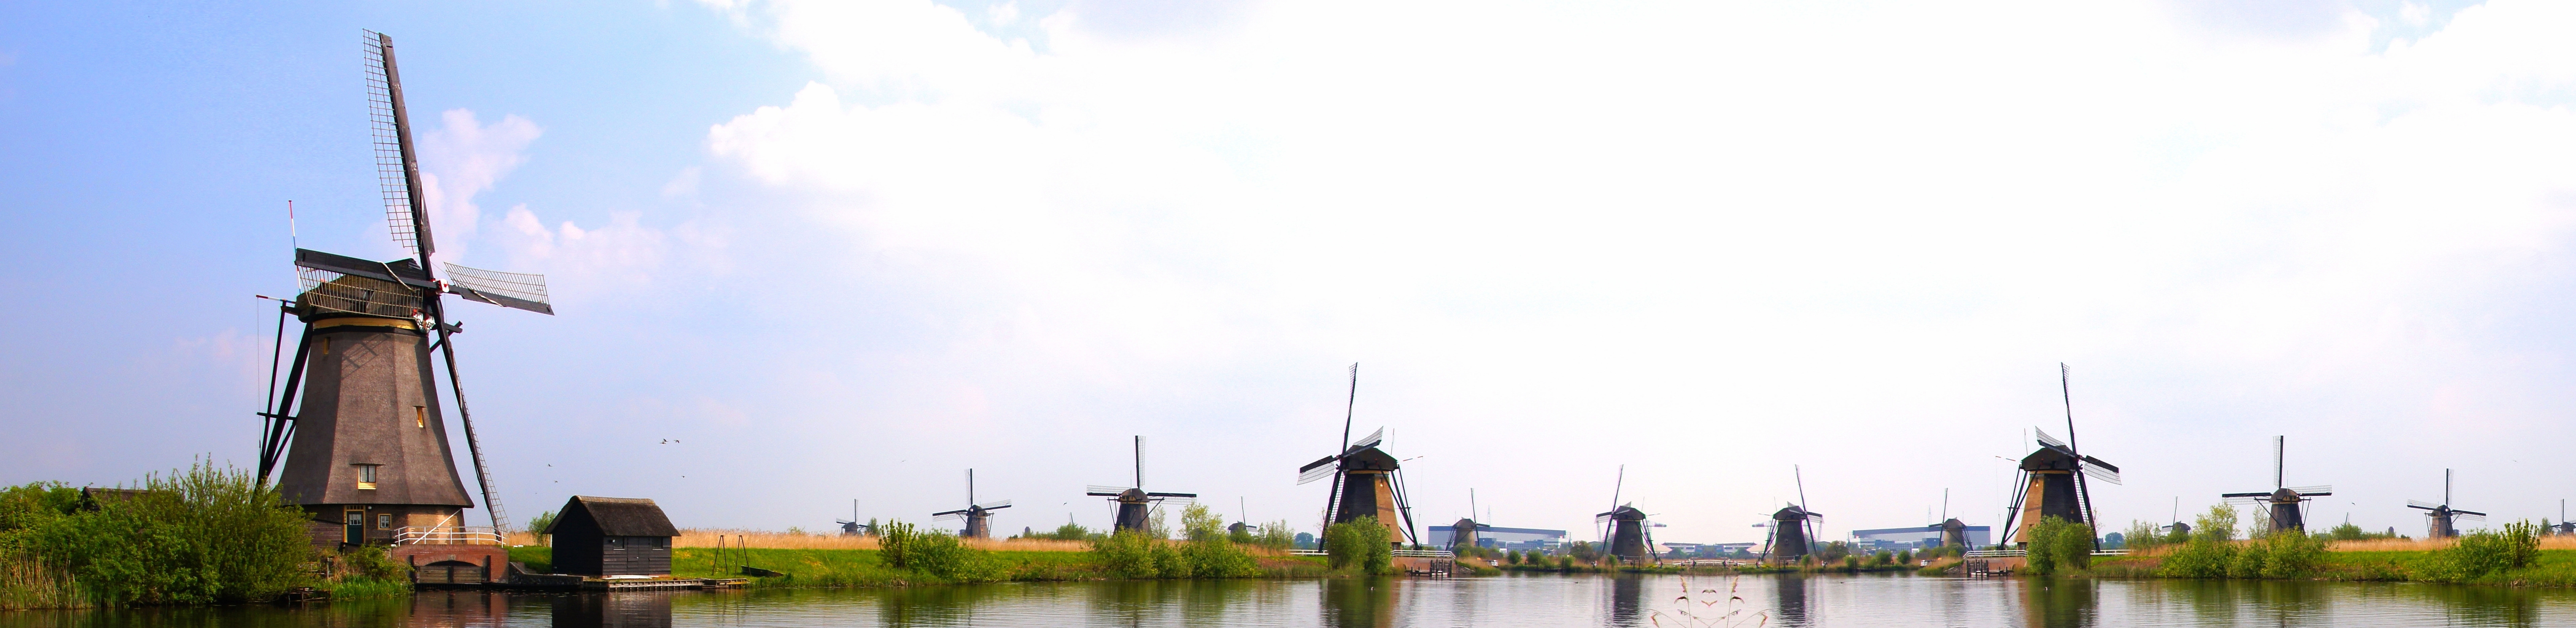 moulins à vent néerlandais